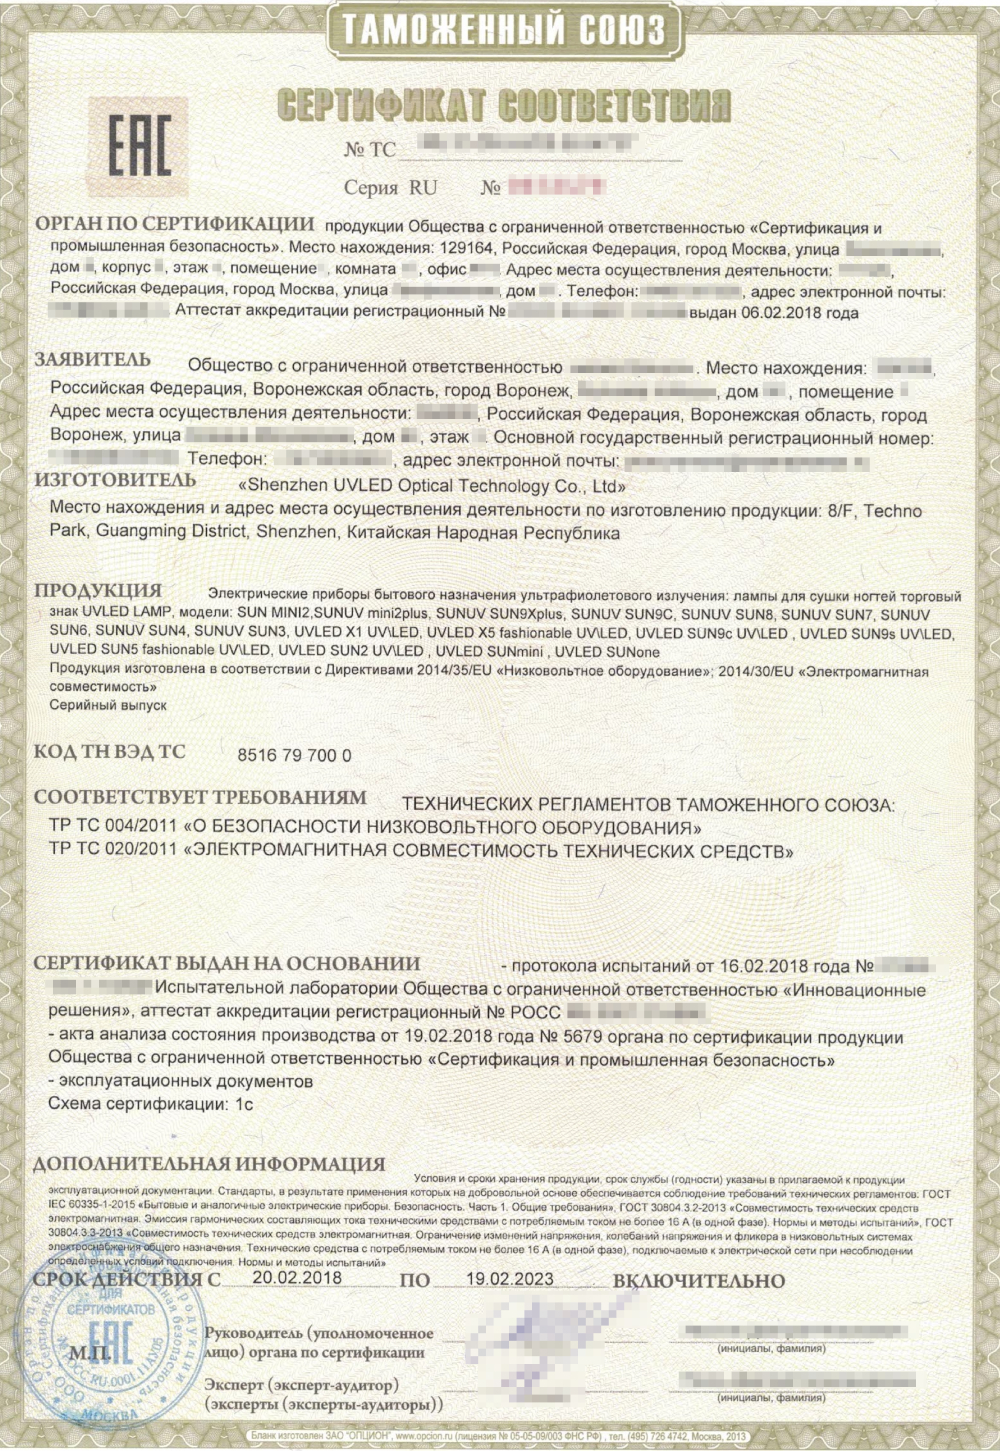 Сертификат соответствия таможенного союза: образец